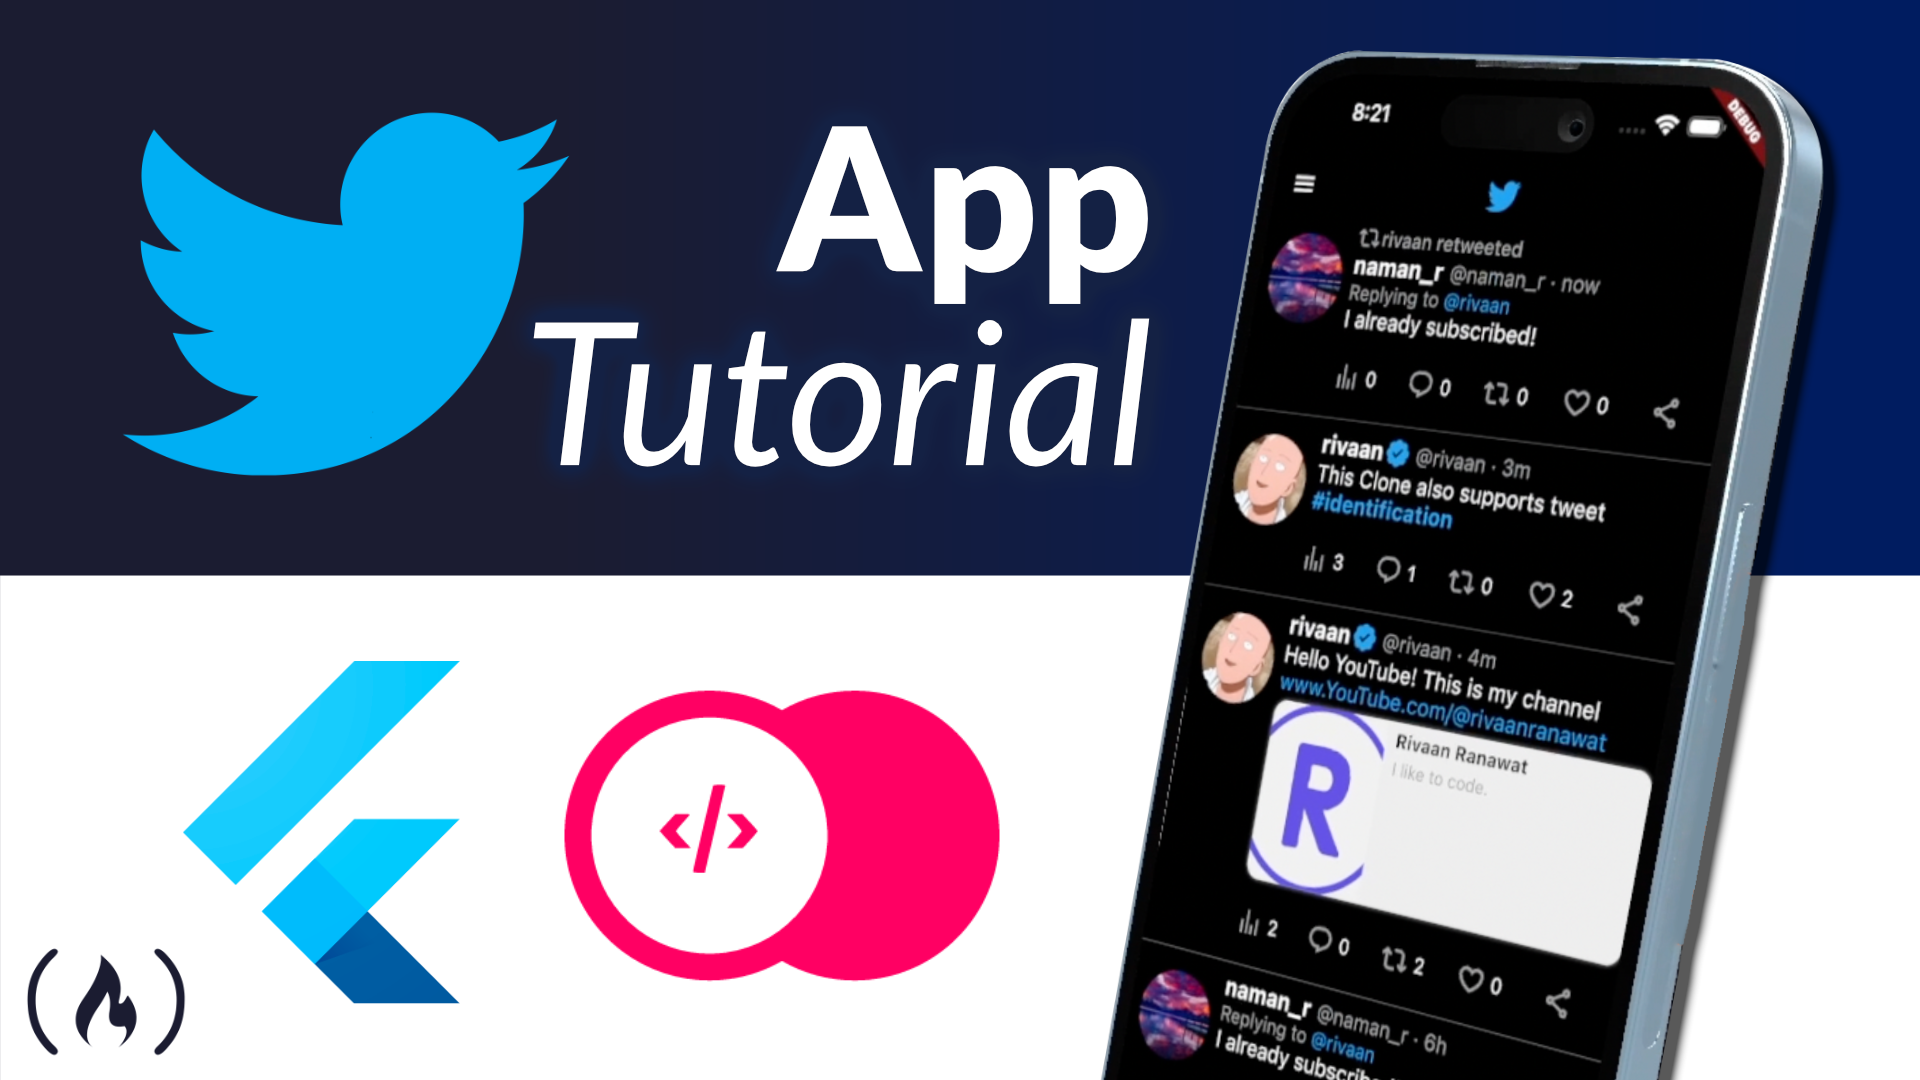 Flutter App Development – Create a Twitter Clone